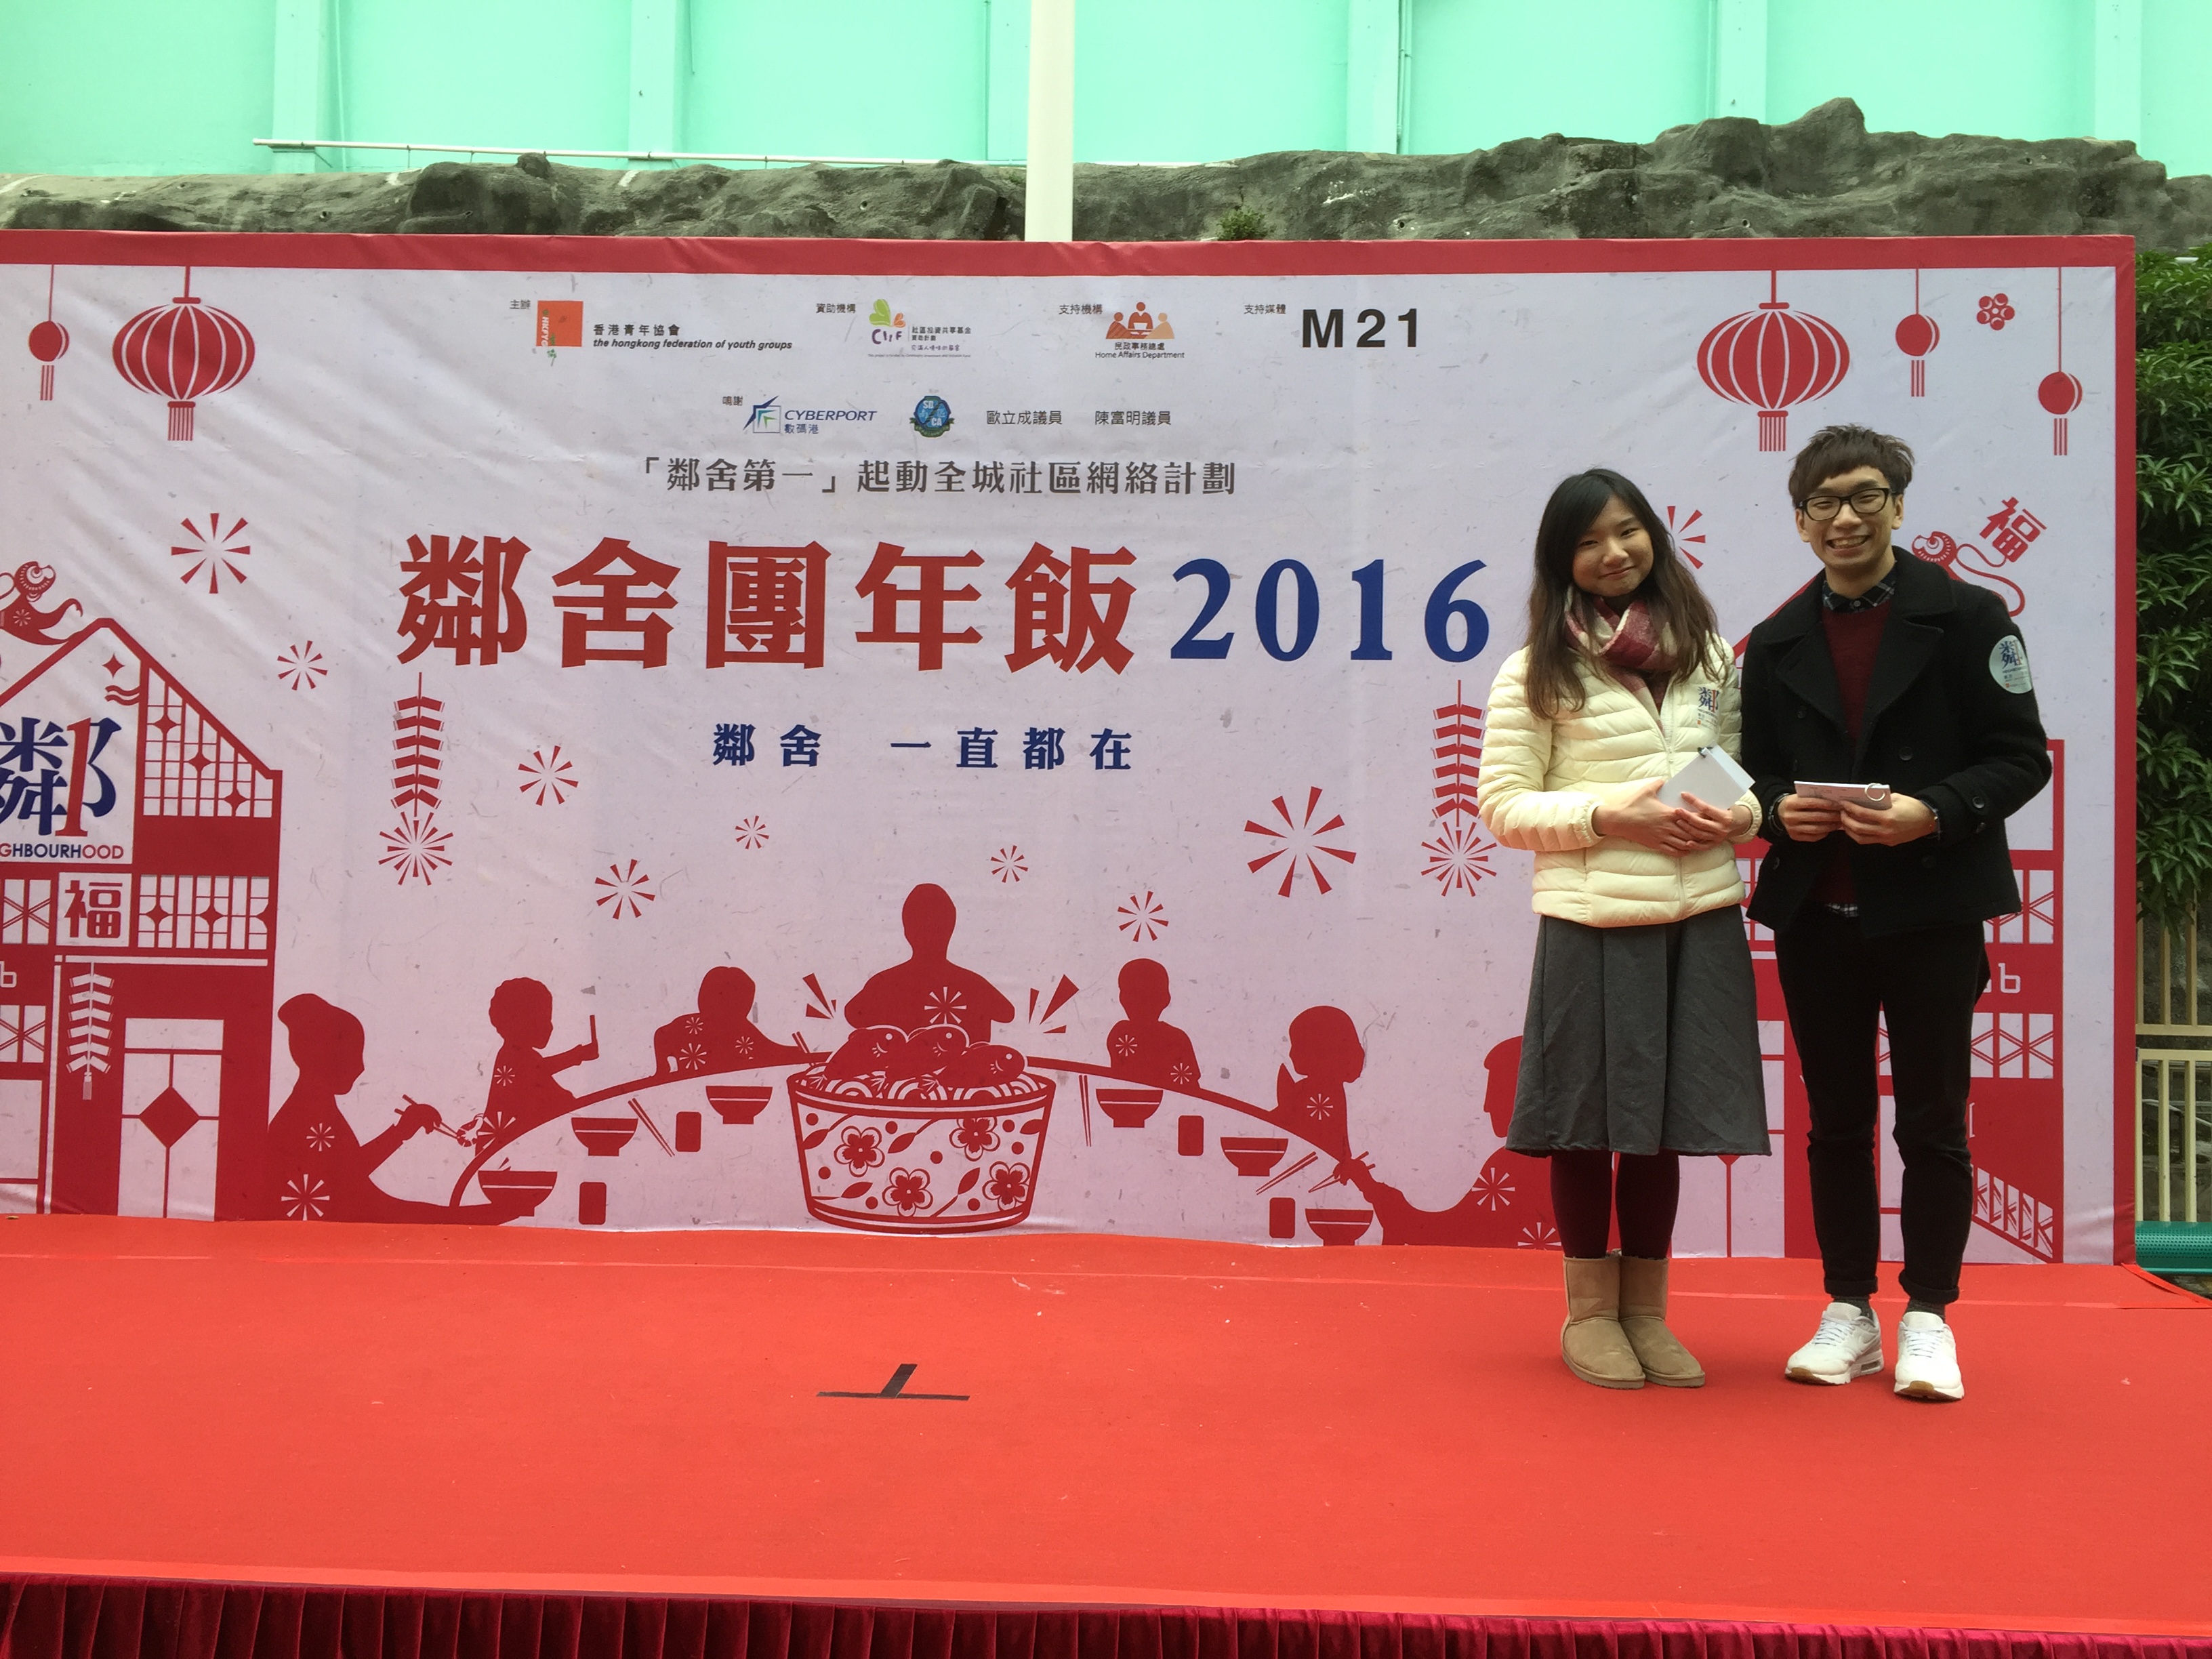 細眼司儀工作紀錄: 「活動主持」香港青年協會M21媒體空間鄰舍團年飯2016